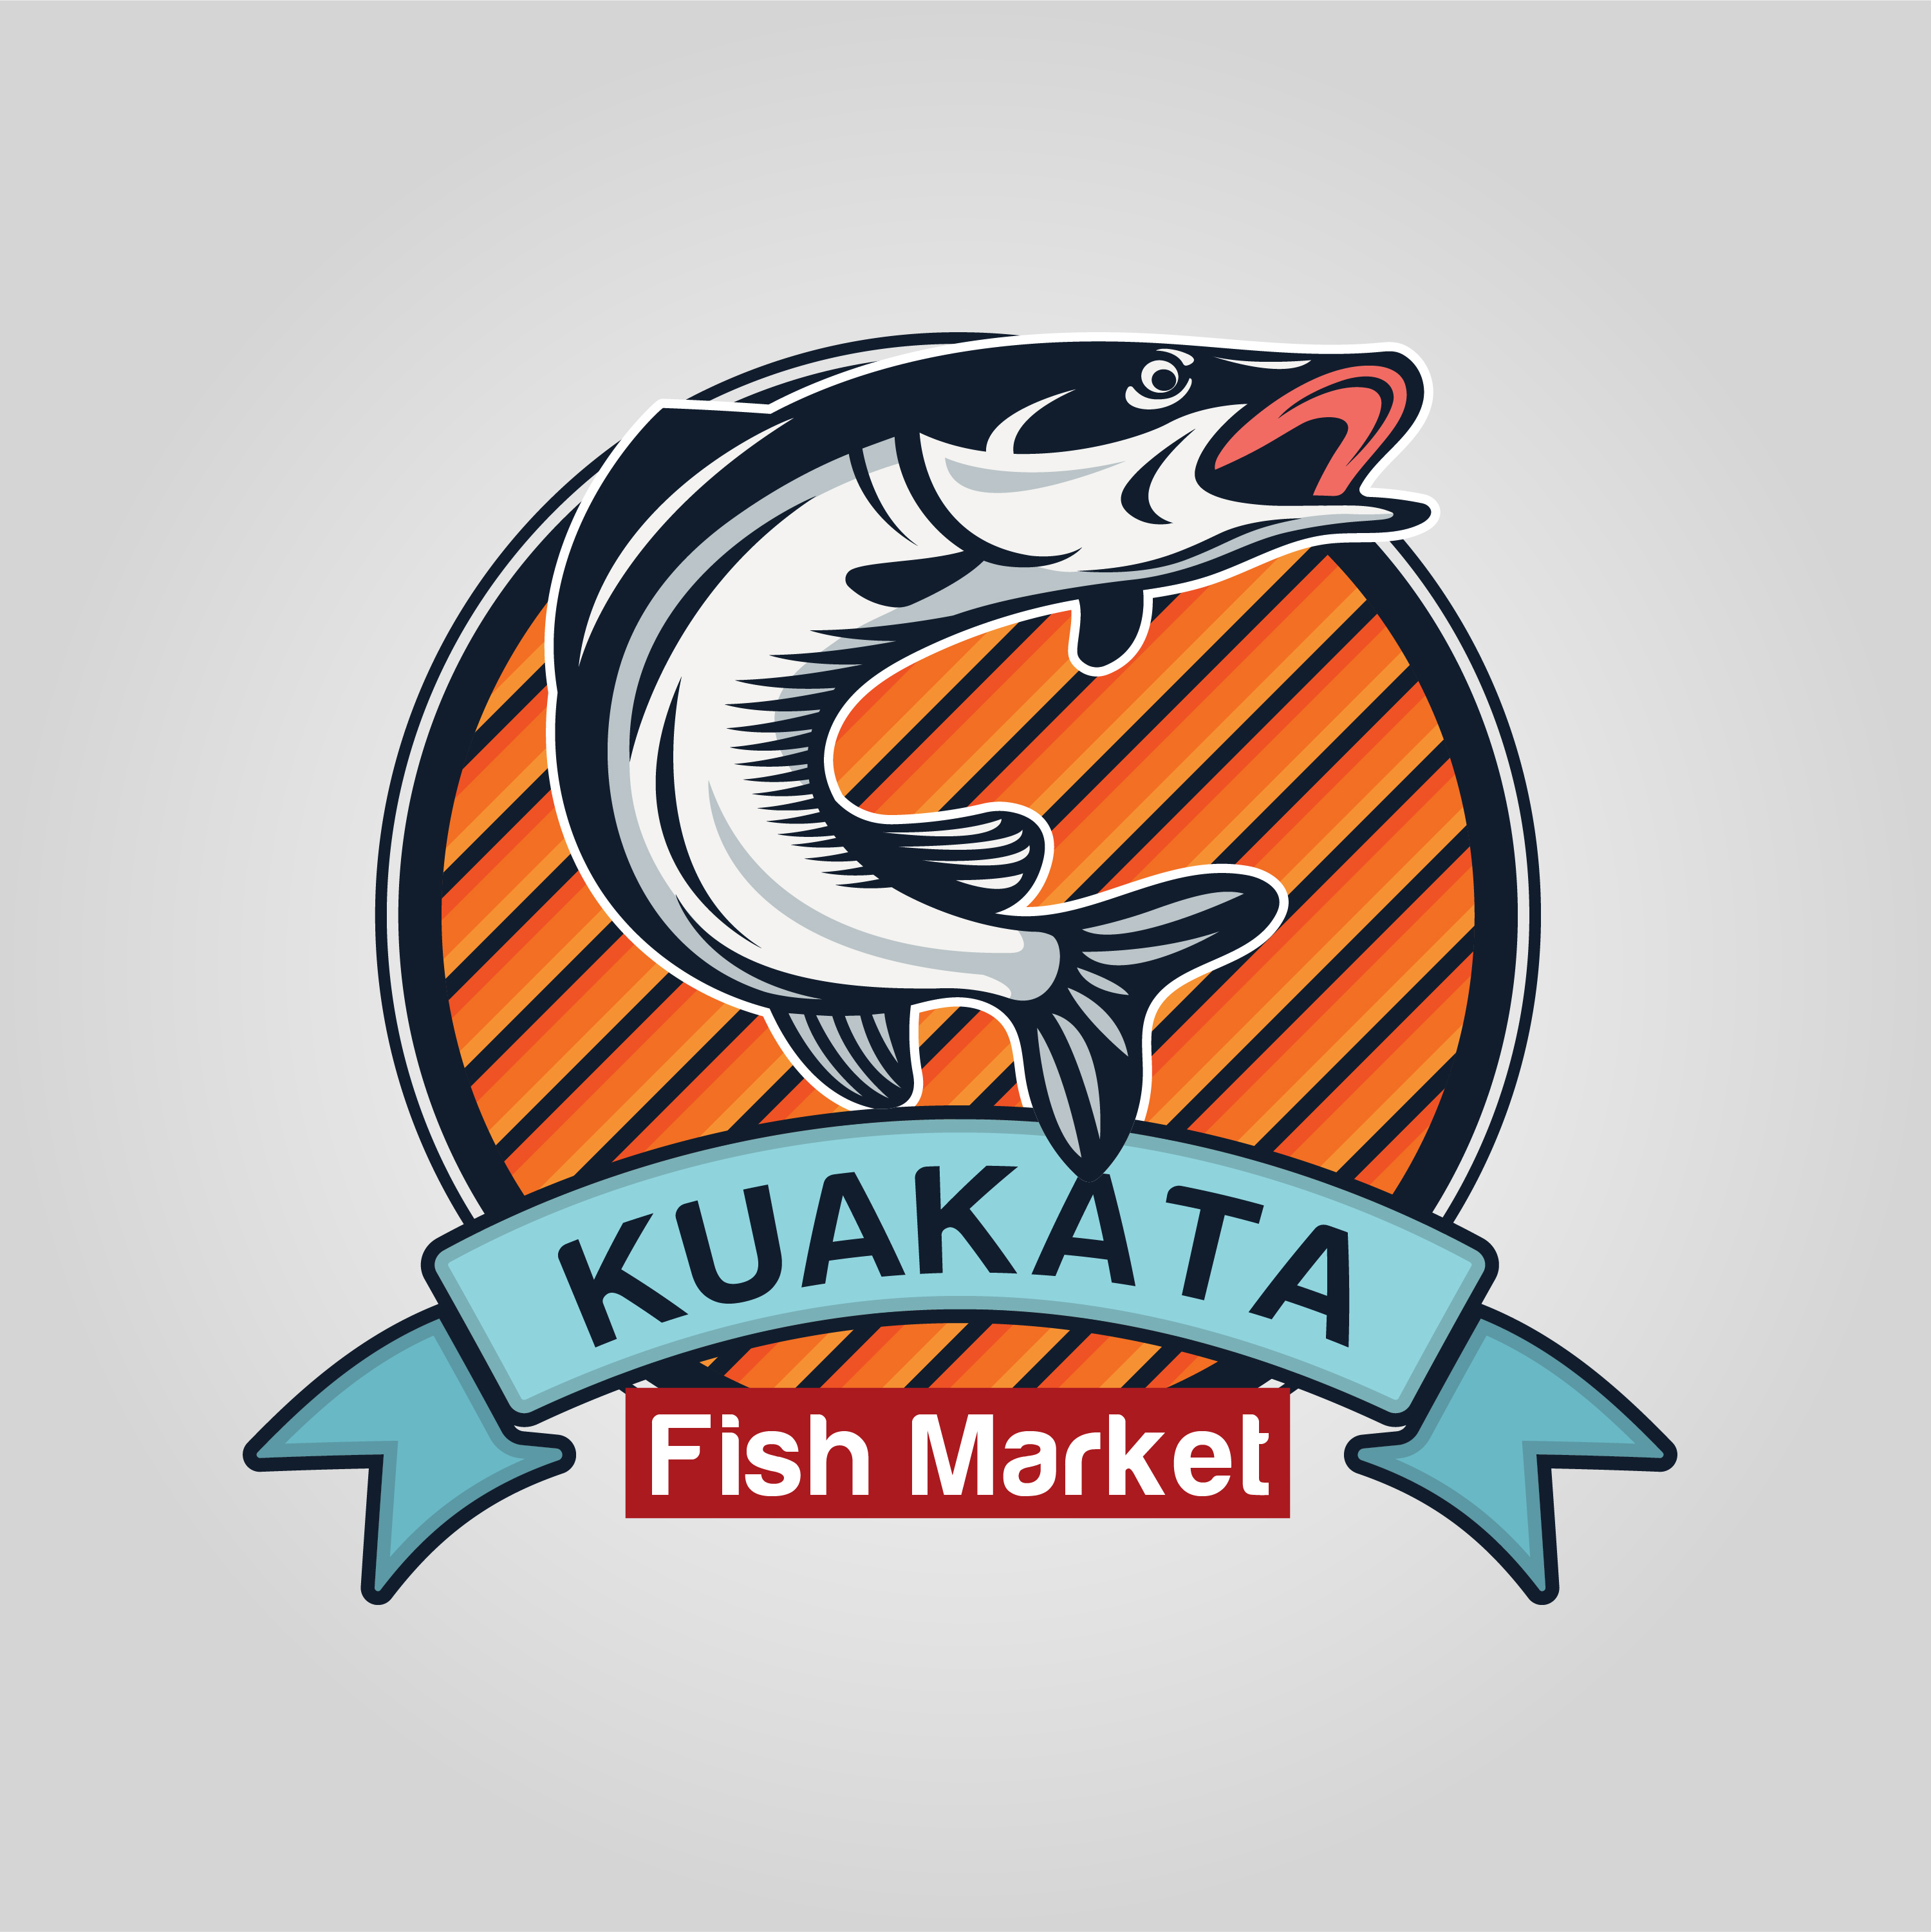 Kuakata Fish Market